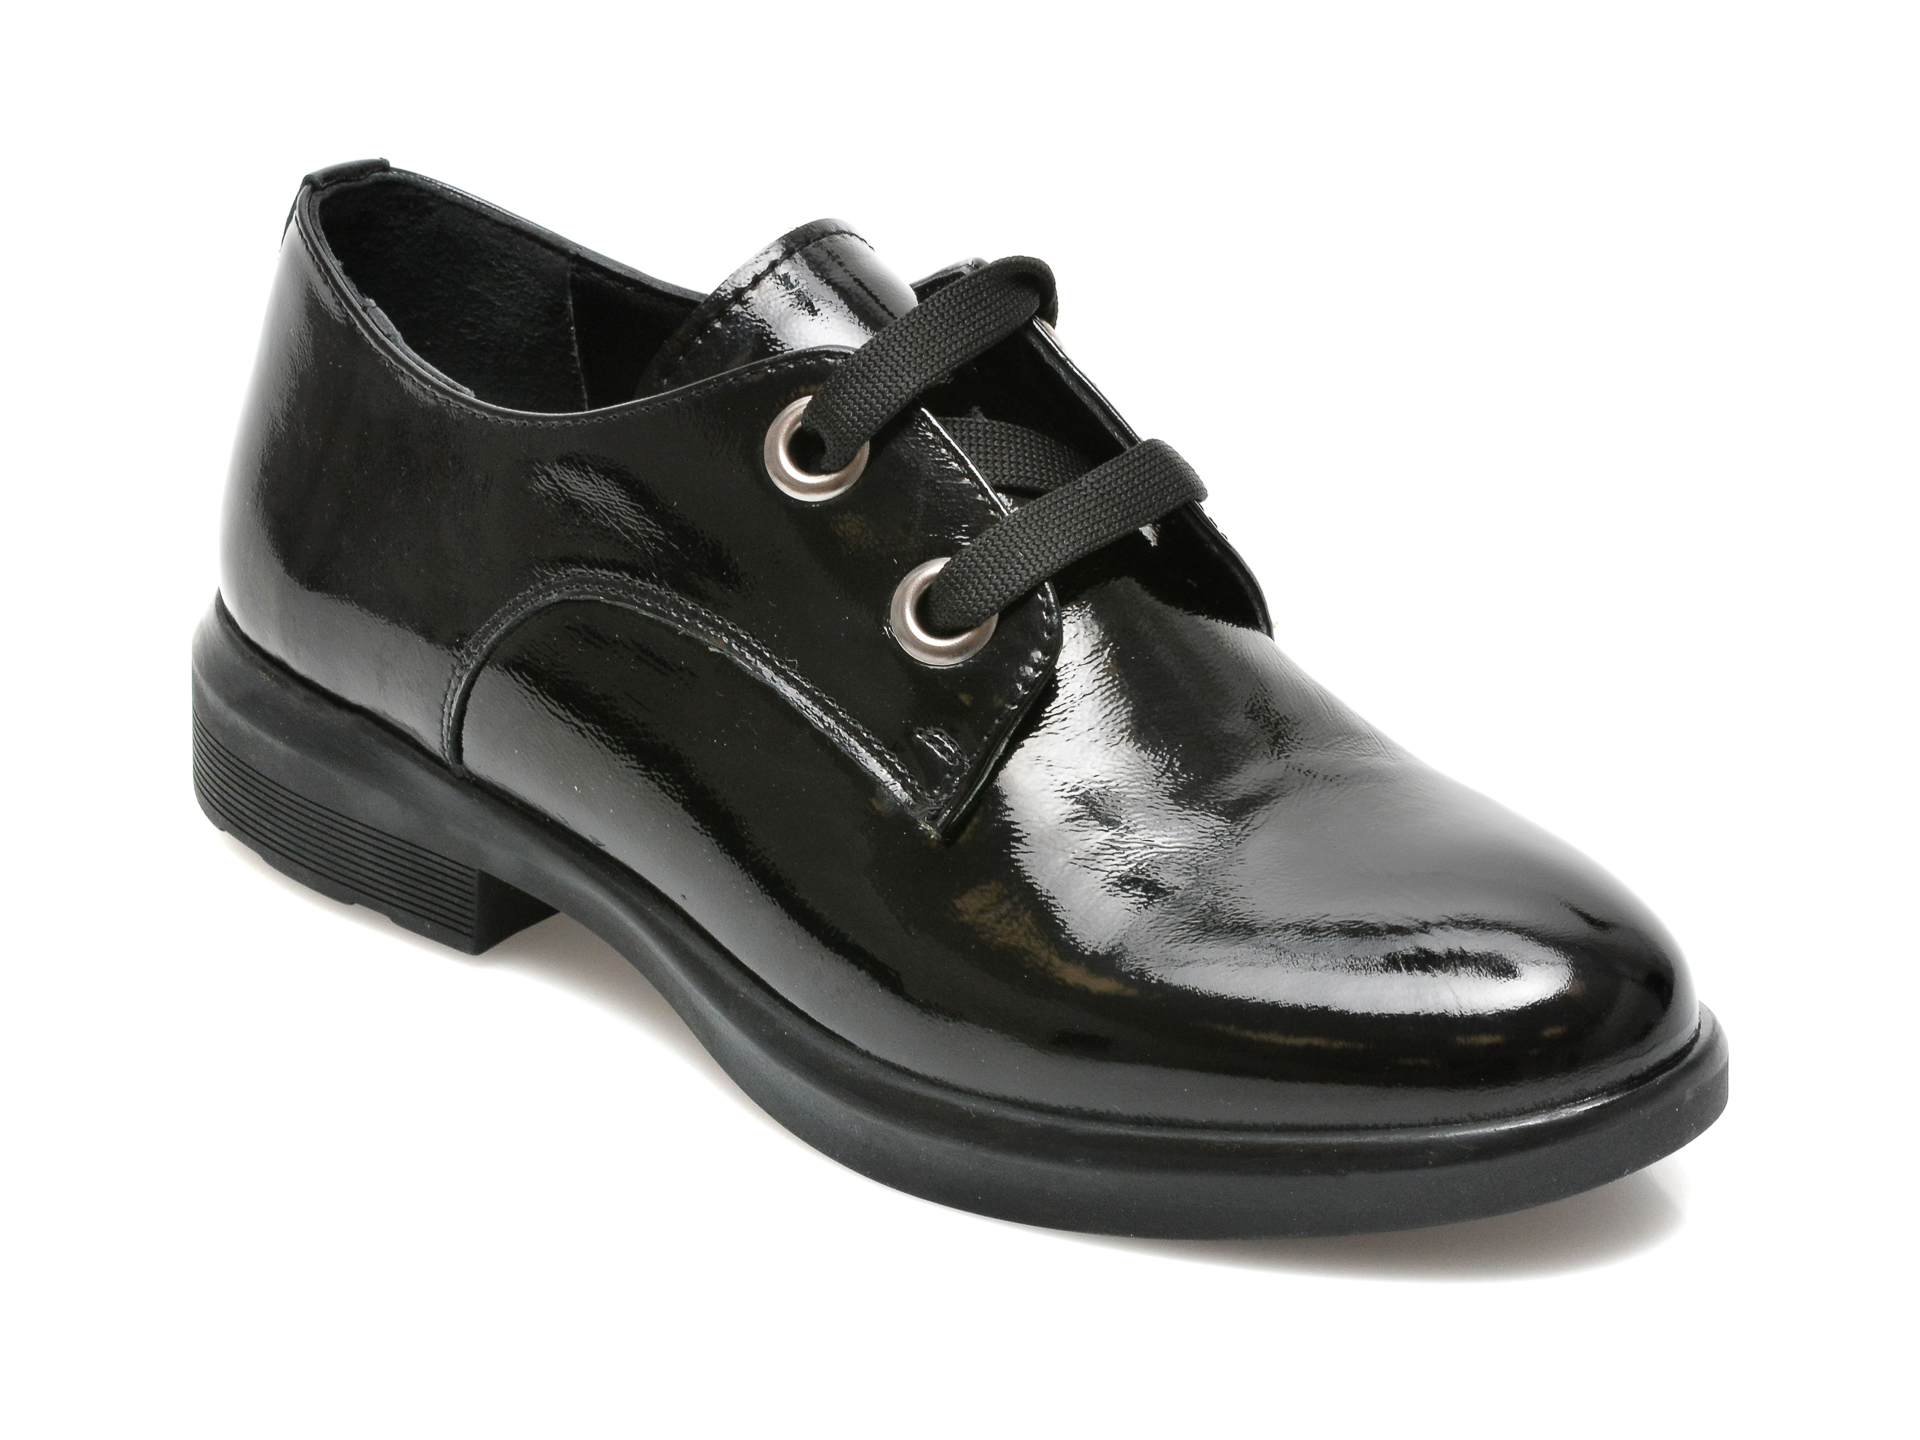 Pantofi FLAVIA PASSINI negri, 7655, din piele naturala lacuita Flavia Passini